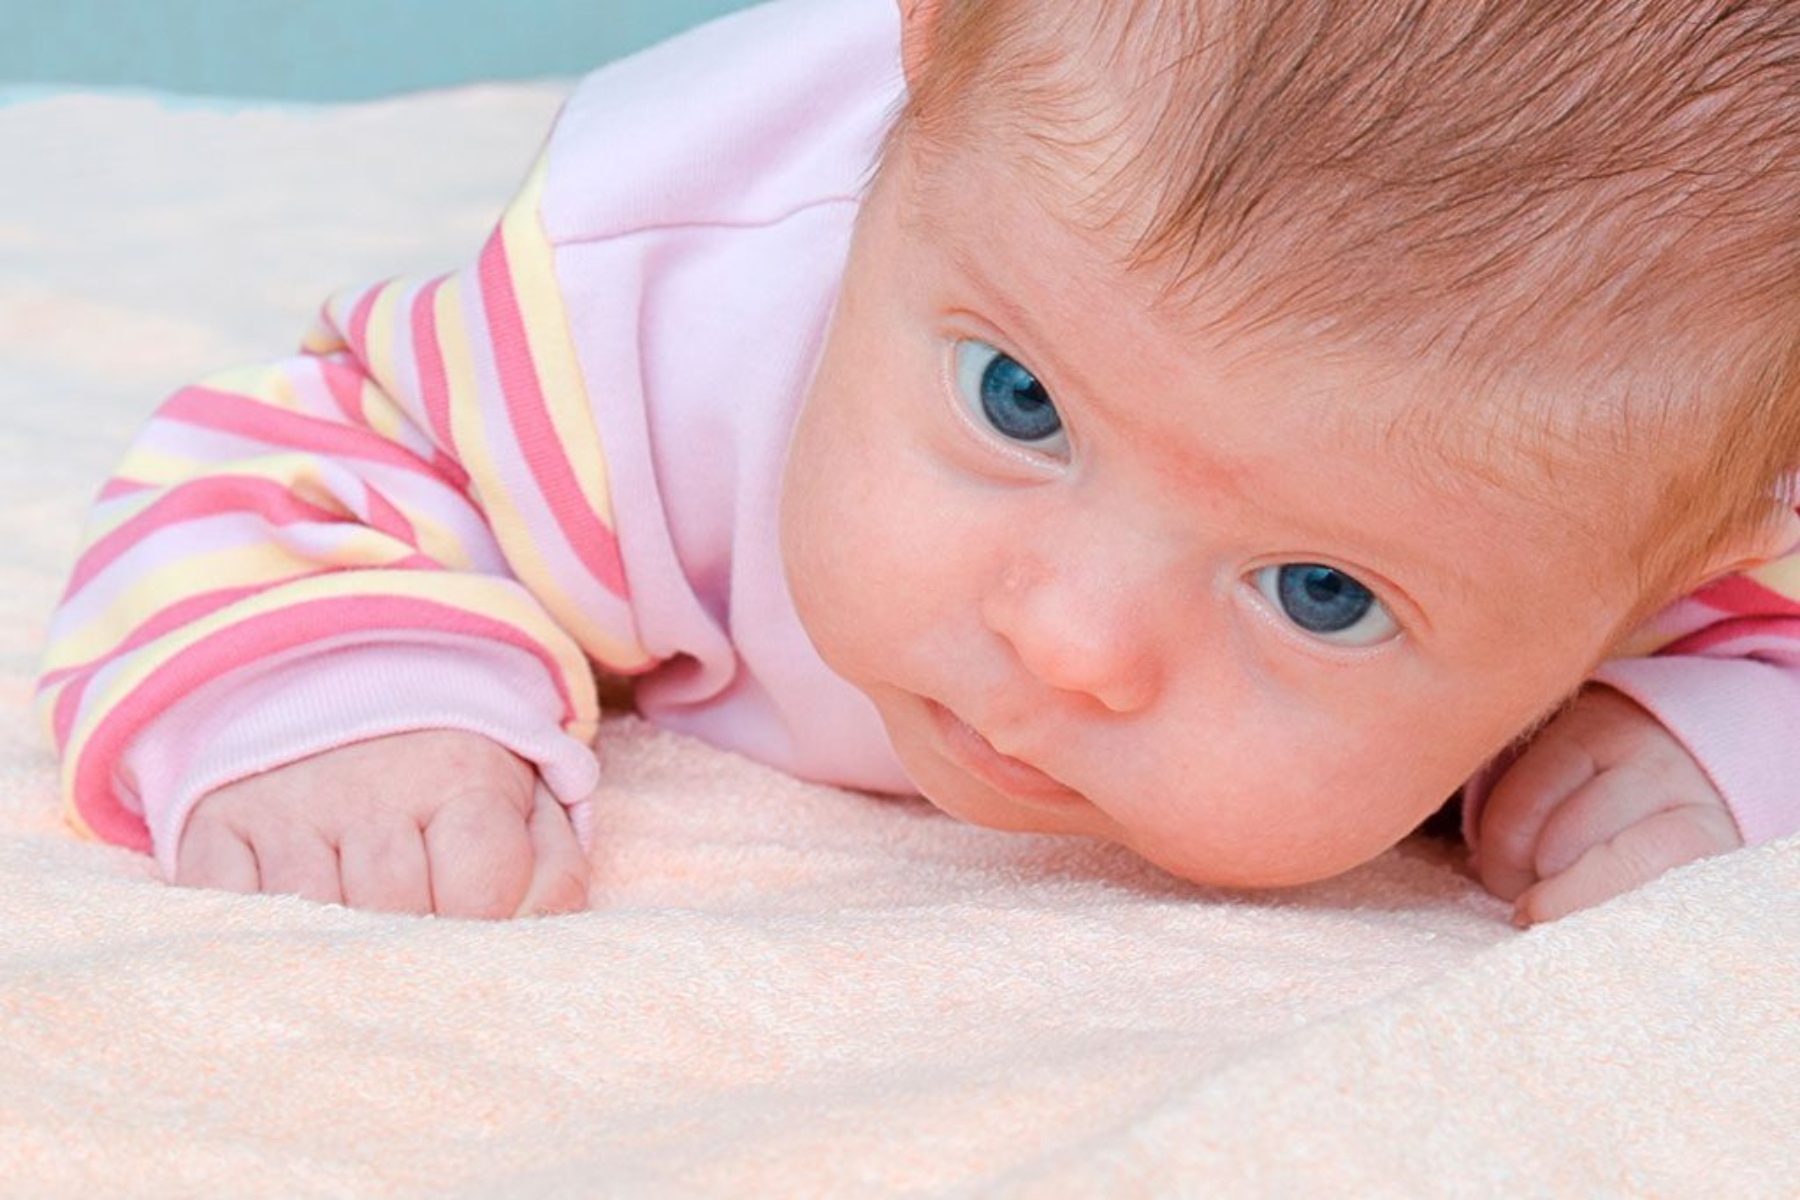 Βρεφική ανάπτυξη: Μωρά ηλικίας 4 μηνών δείχνουν σημάδια αυτογνωσίας